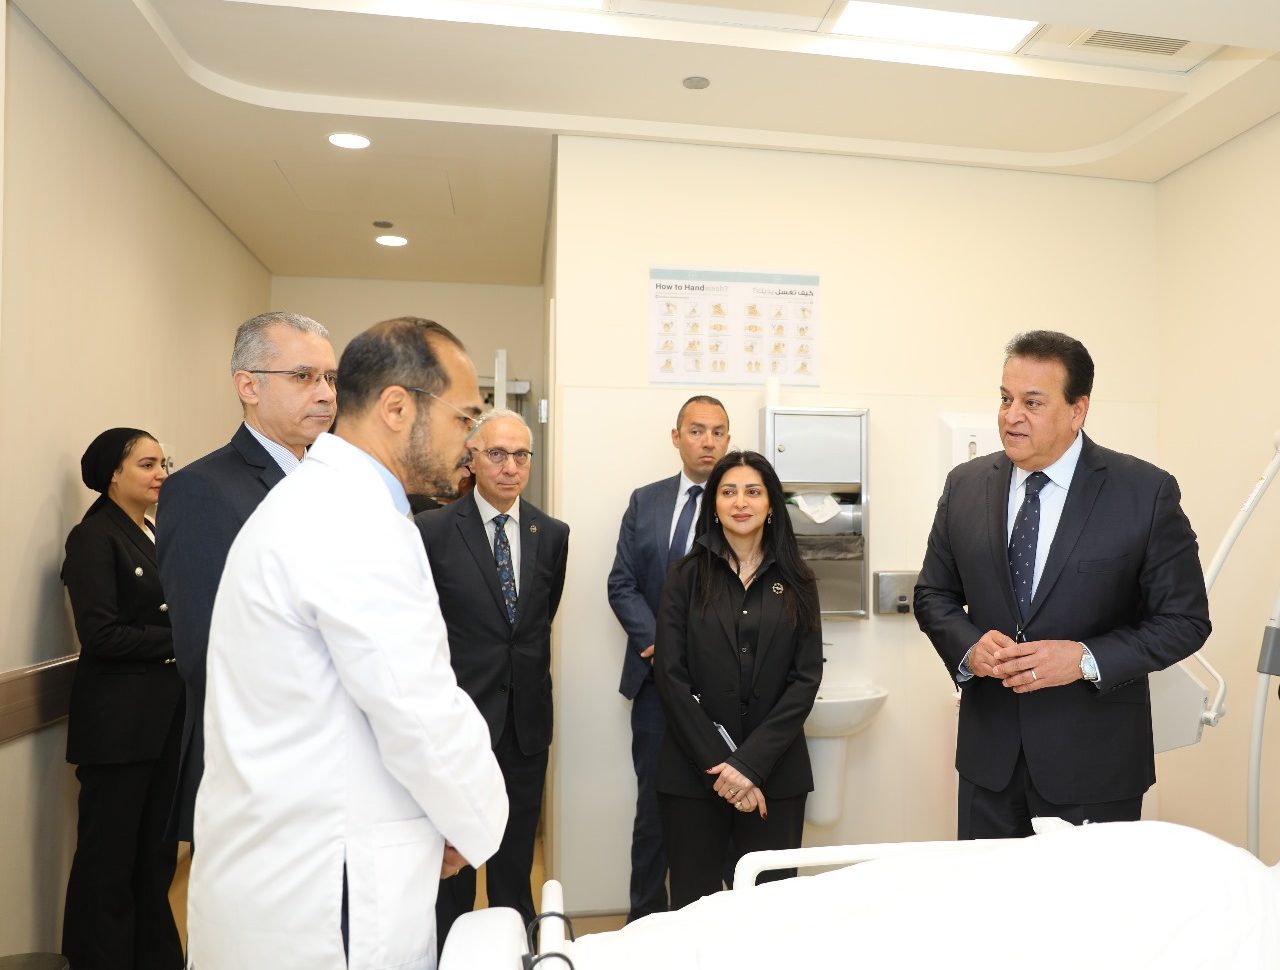 وزير الصحة: مستشفي أهل مصر صرح طبي متميز يُضاف للمنظومة الصحية في مصر